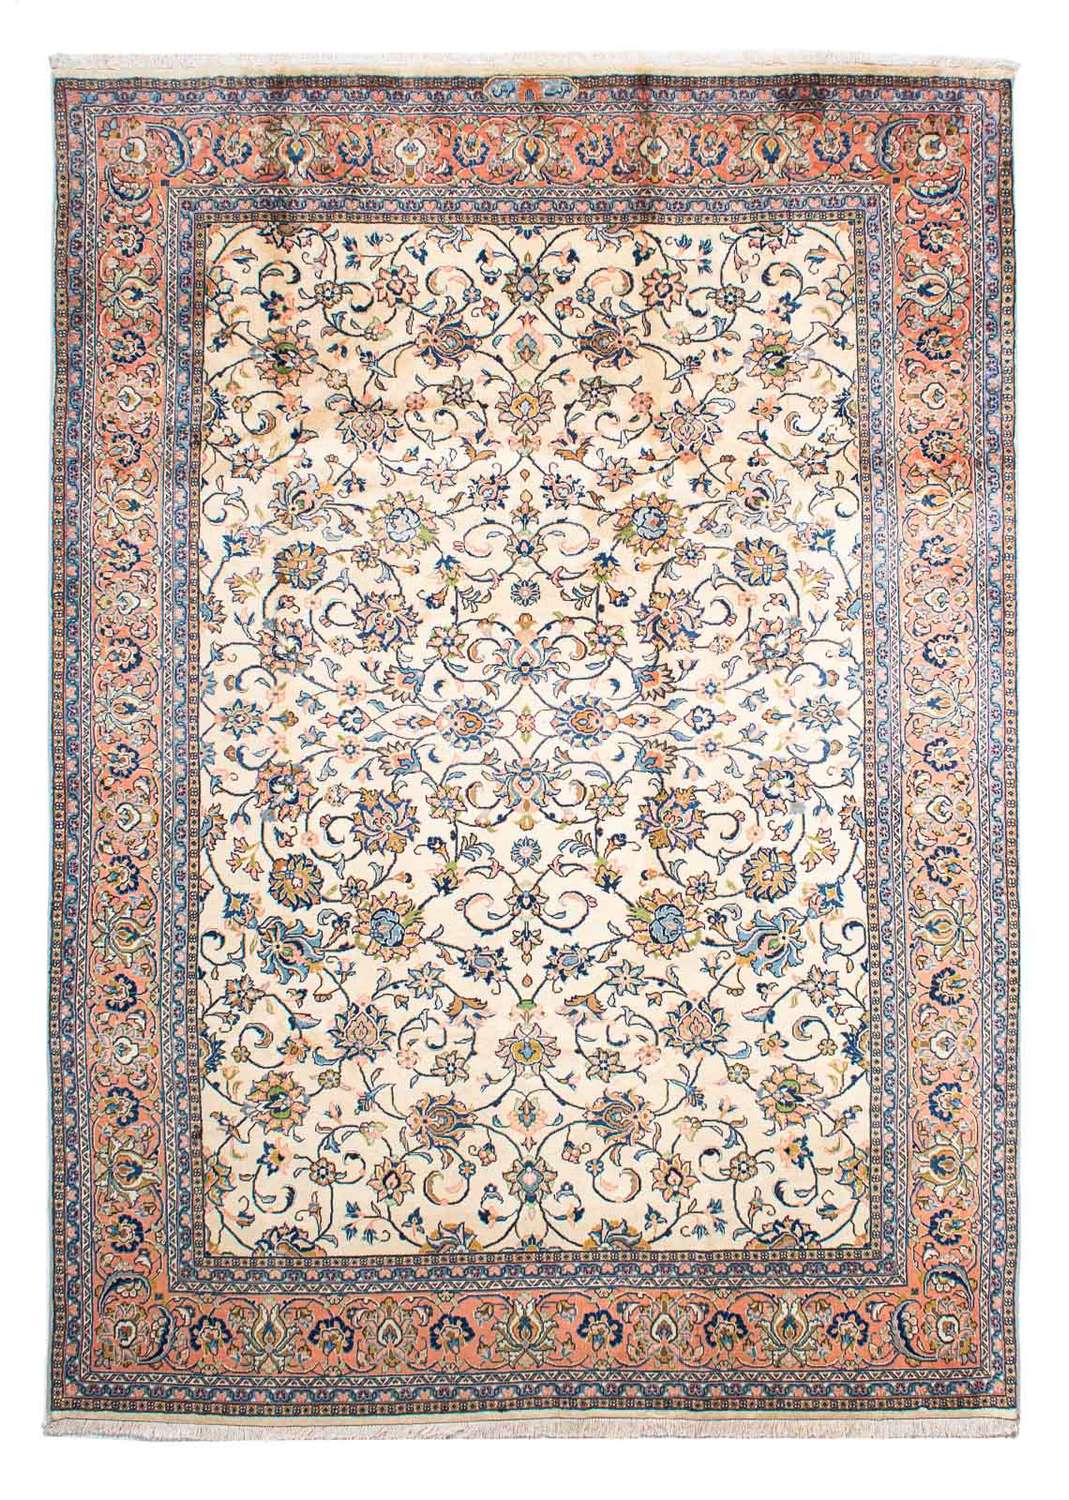 Tapis persan - Classique - 281 x 207 cm - beige